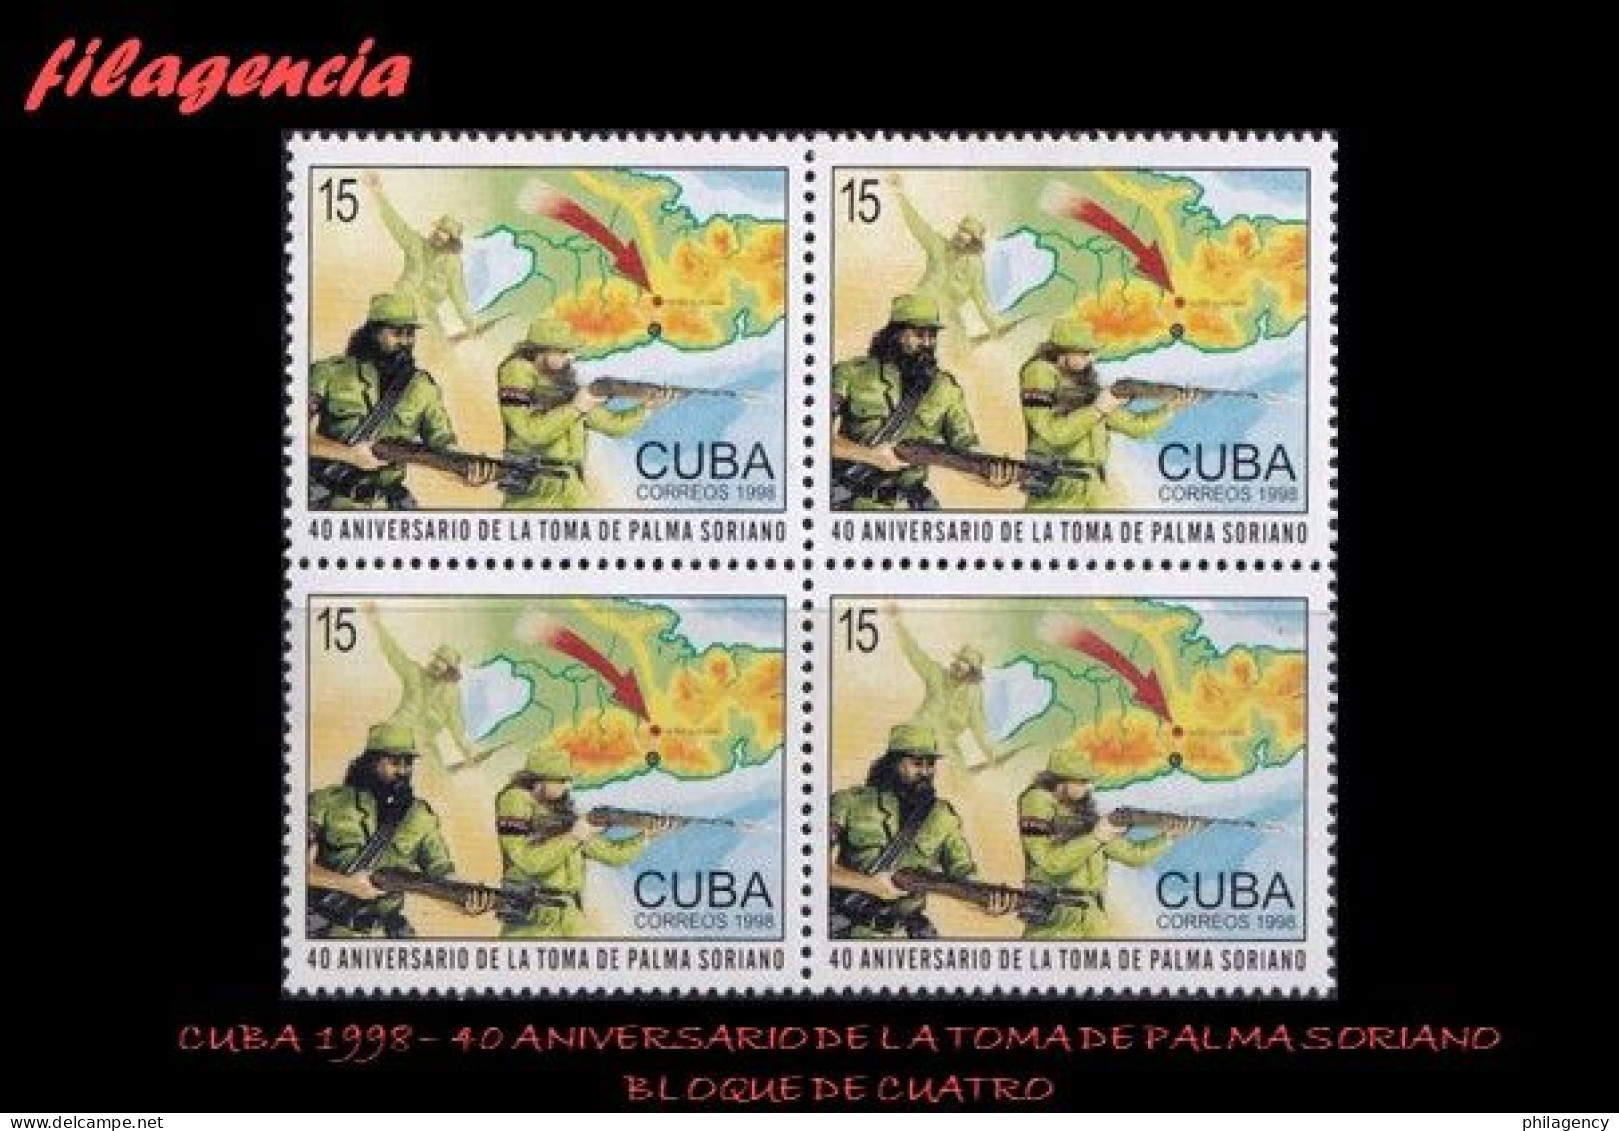 CUBA. BLOQUES DE CUATRO. 1998-35 40 ANIVERSARIO DE LA TOMA DE PALMA SORIANO - Ungebraucht